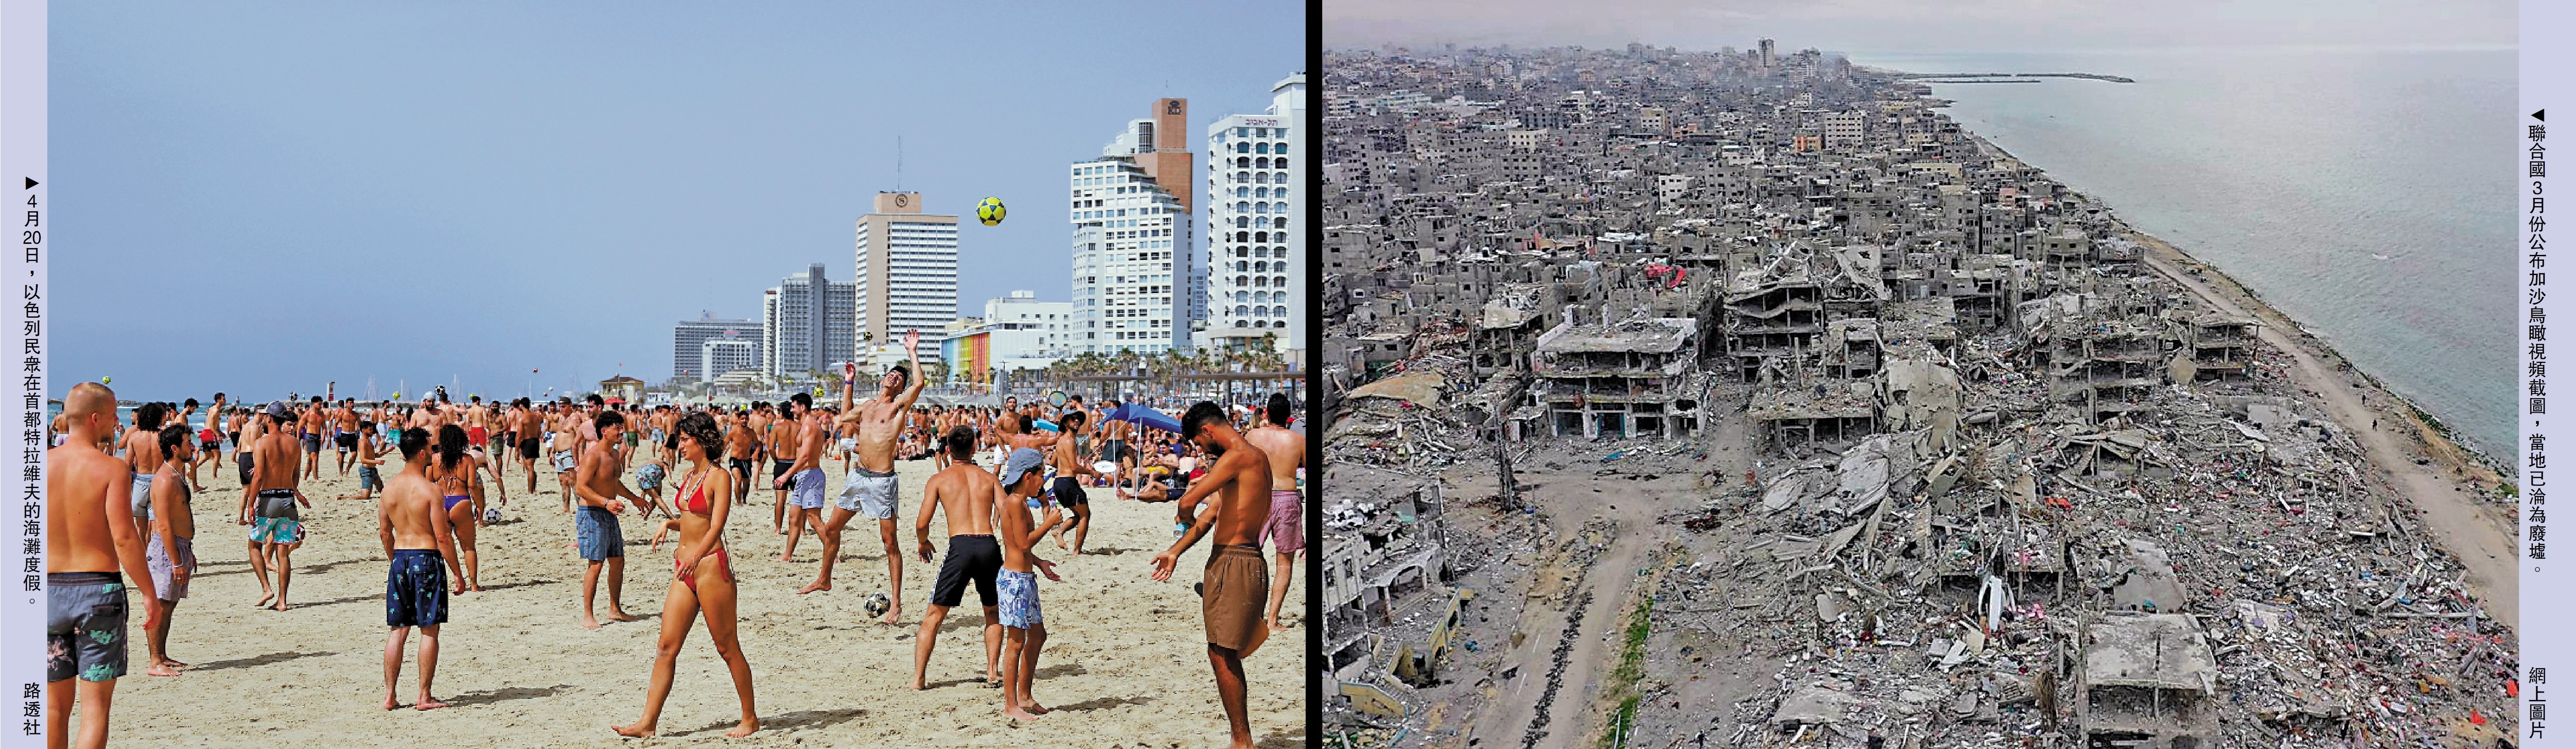 　　右圖：聯合國3月份公布加沙鳥瞰視頻截圖，當地已淪為廢墟。\網上圖片；左圖：4月20日，以色列民眾在首都特拉維夫的海灘度假。\路透社